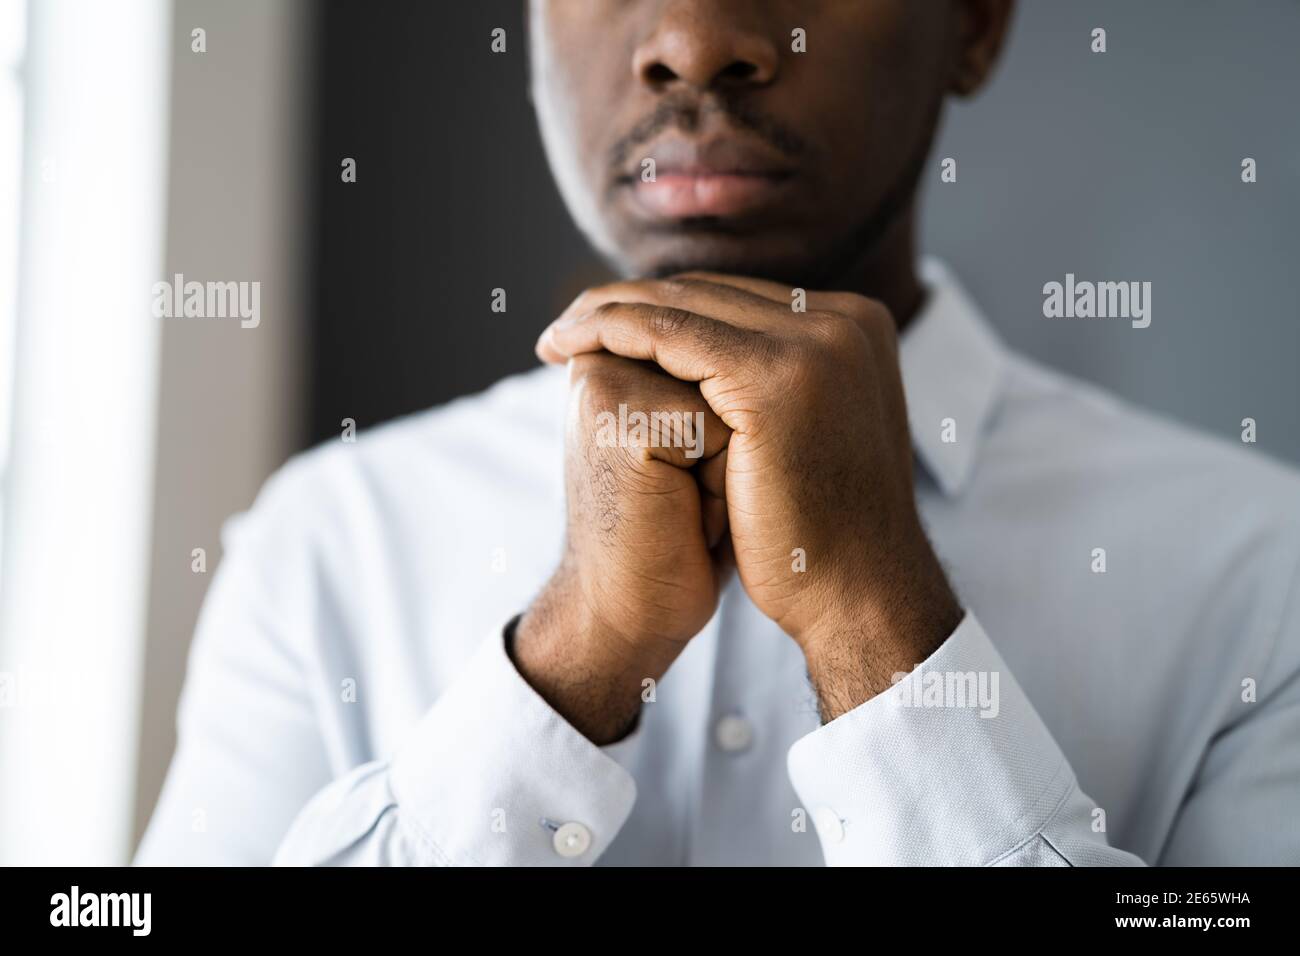 L'homme afro-américain priant et cherchant Dieu Banque D'Images